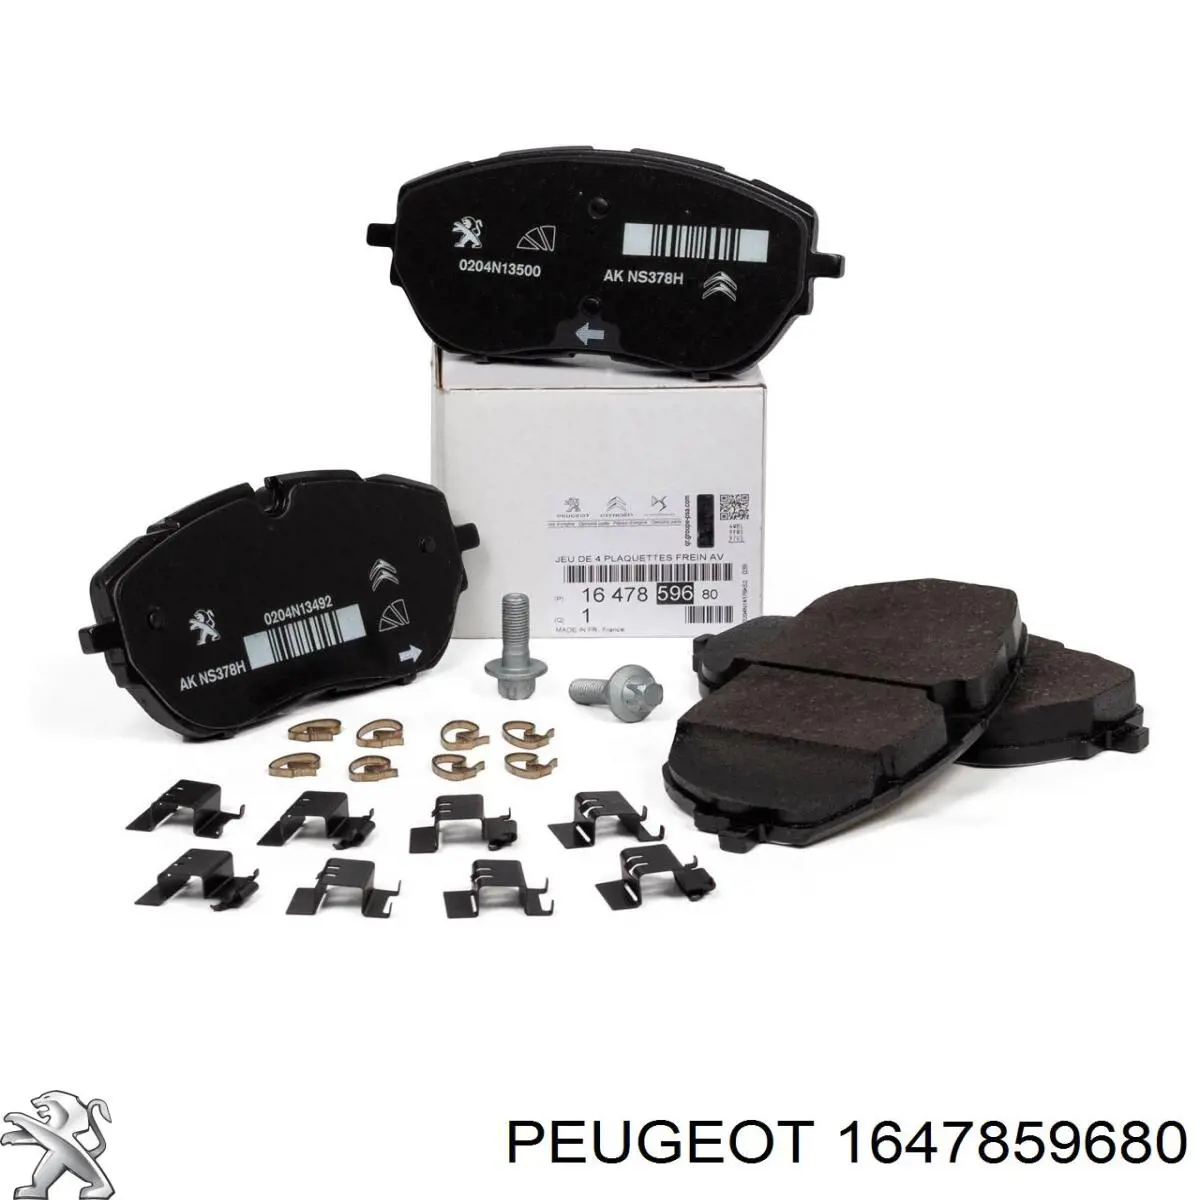 1647859680 Peugeot/Citroen колодки тормозные передние дисковые